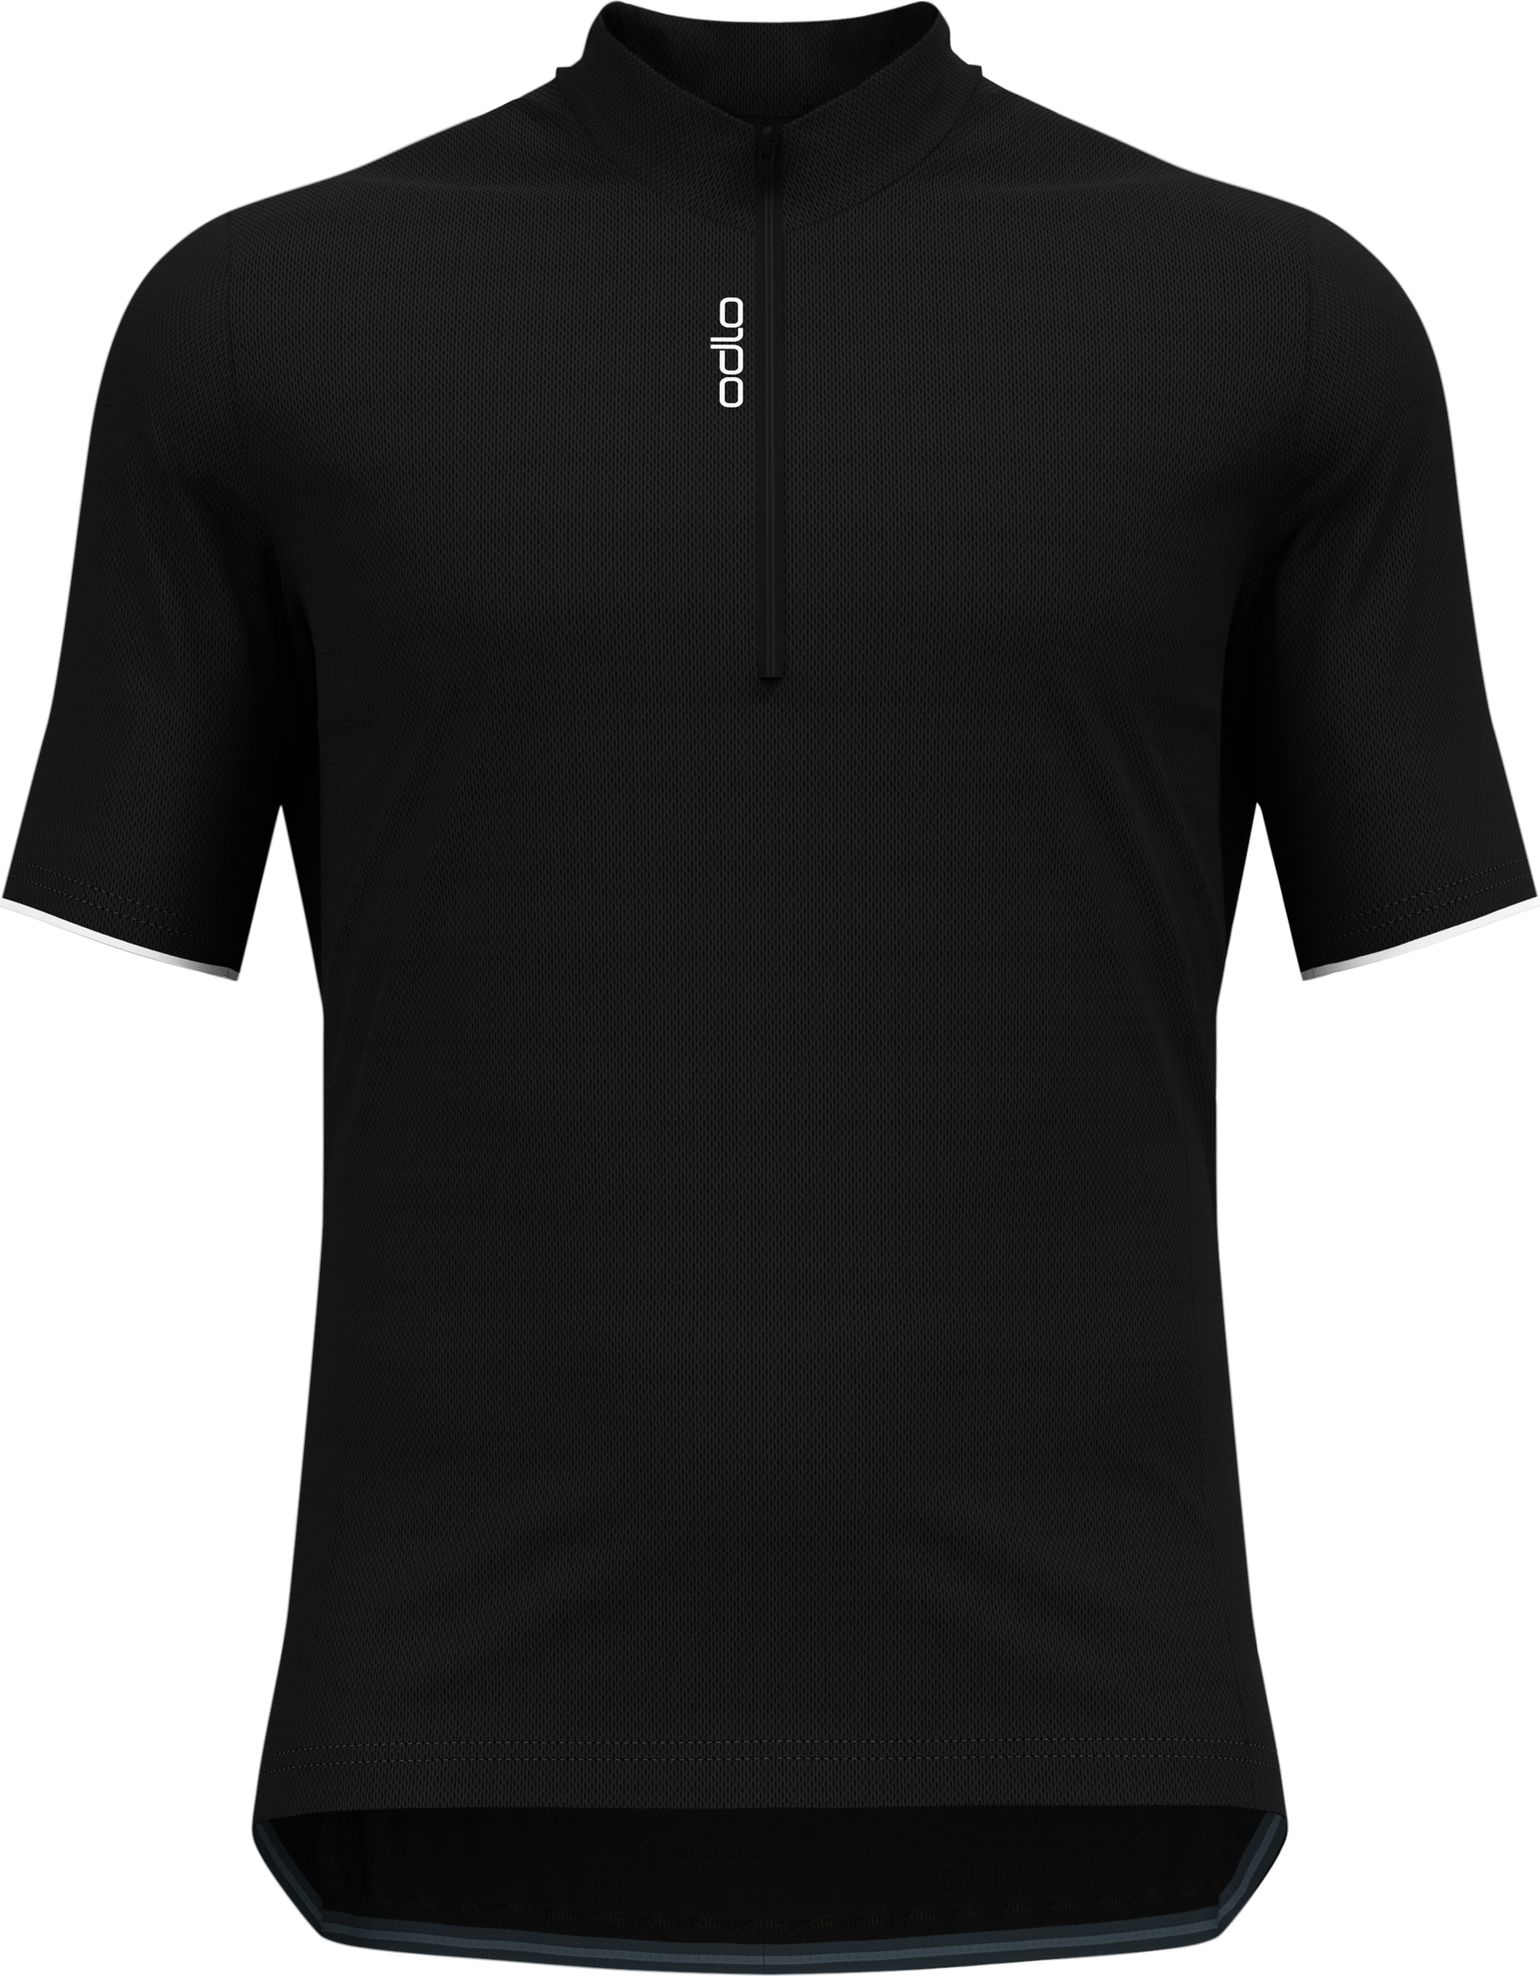 Men's T-shirt S/U Collar S/S 1/2 Zip Essential Black